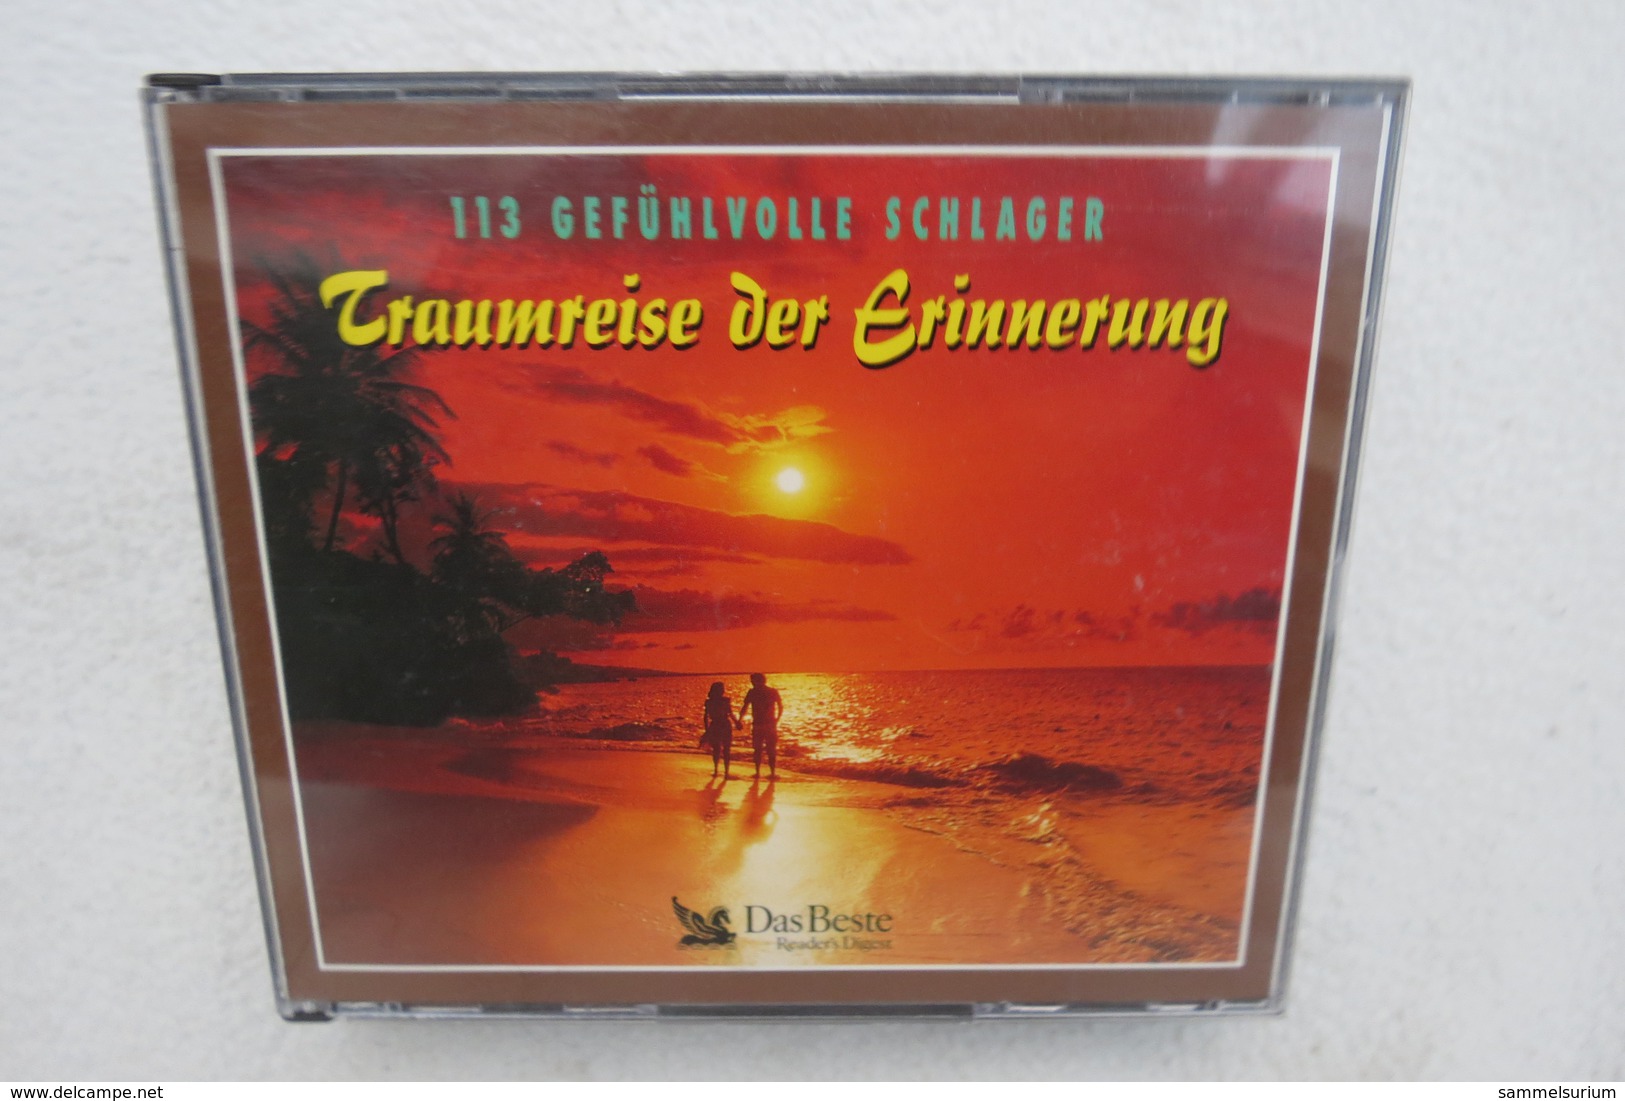 3 CDs "Traumreise Der Erinnerung" 113 Gefühlvolle Schlager - Autres - Musique Allemande